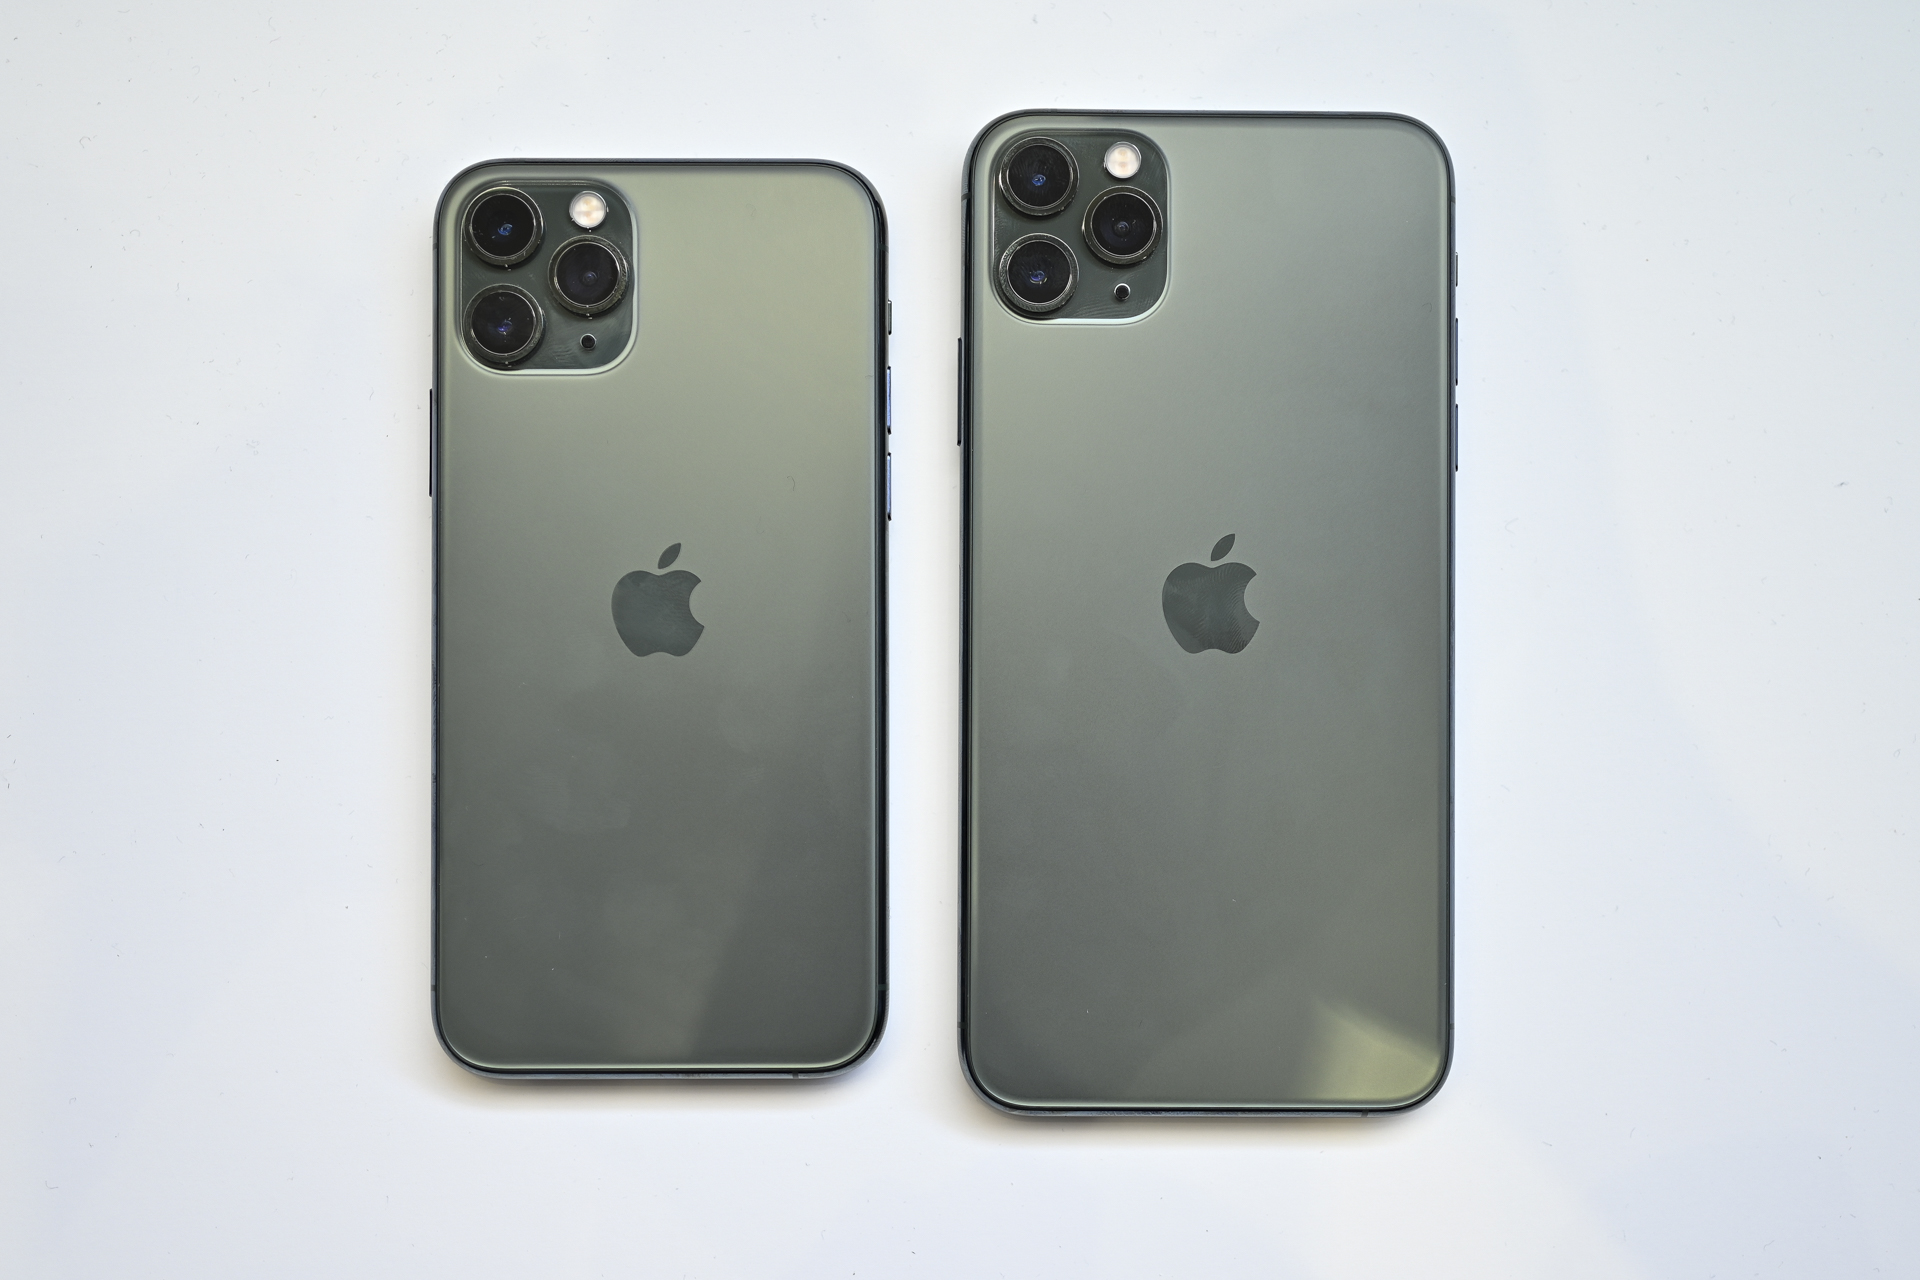 Айфон 11 и 11 про макс сравнение размеров фото